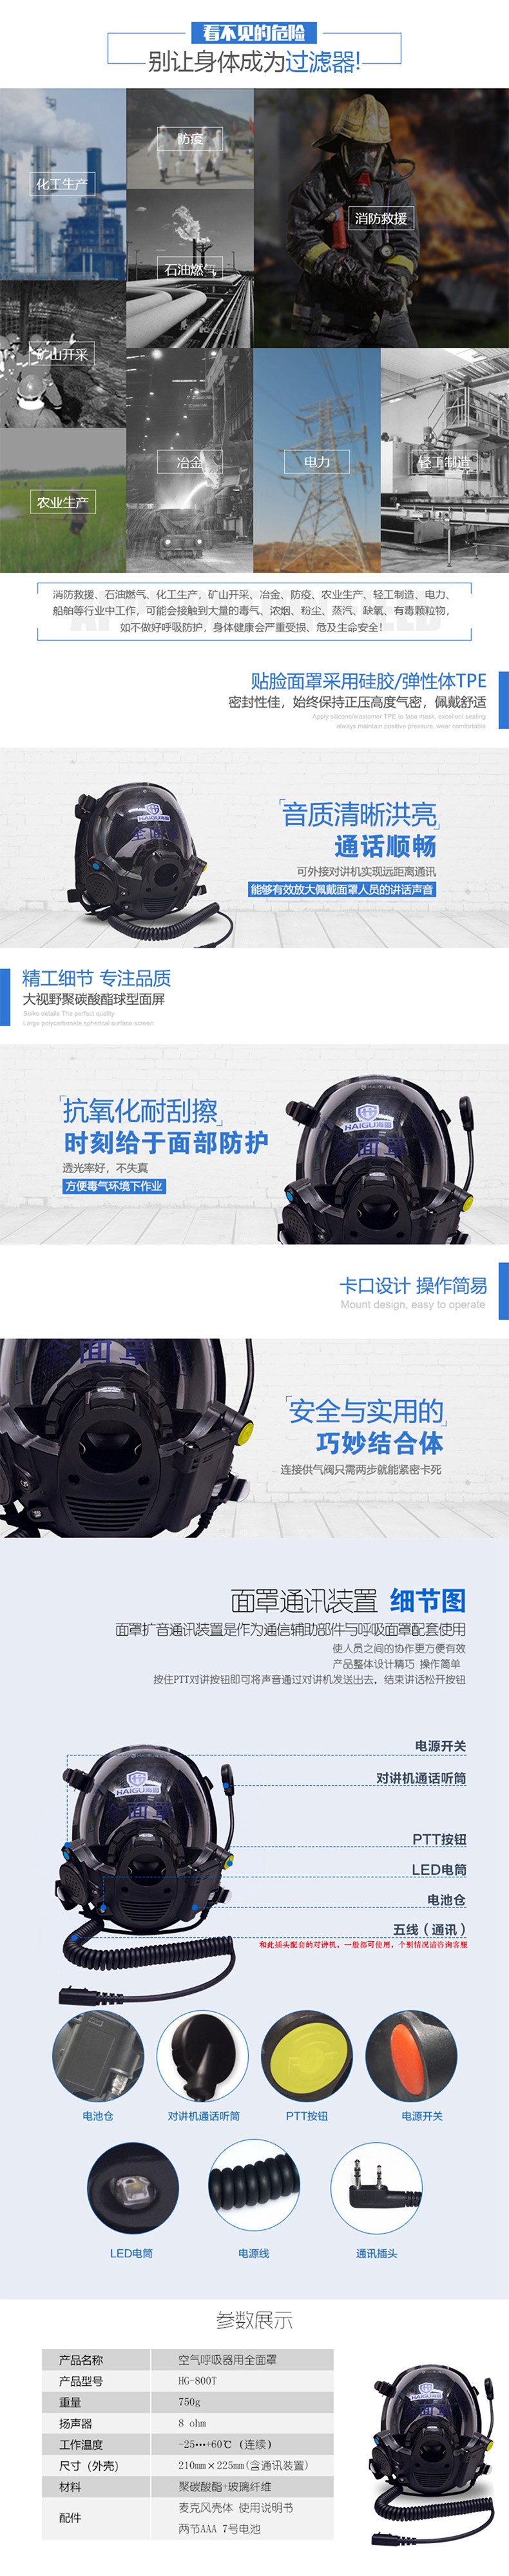 海固HG-800T球型大视野通讯全面罩 空气呼吸器通话面罩图片